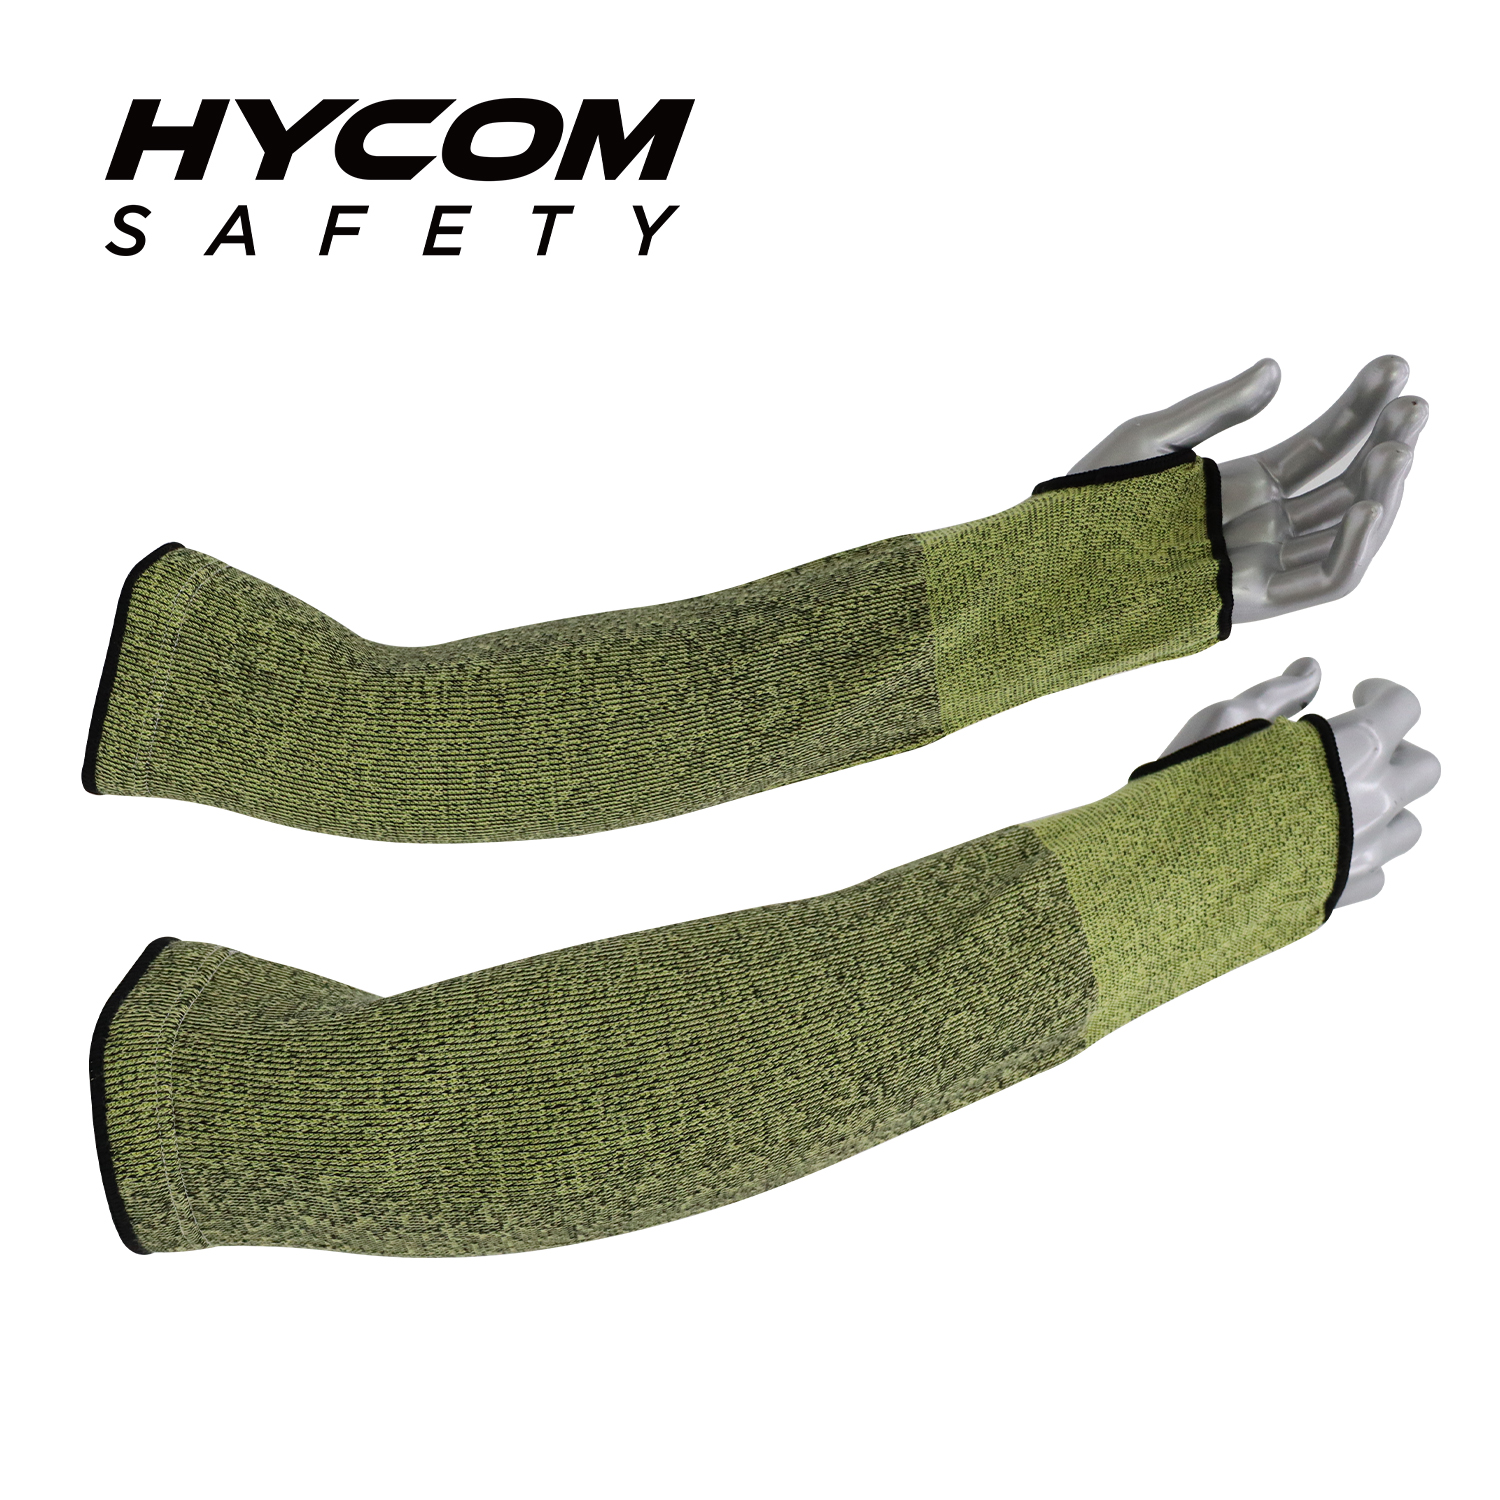 HYCOM Manga de brazo resistente a cortes de seguridad industrial de nivel 5 de corte de aramida 14 con ranura para el pulgar 